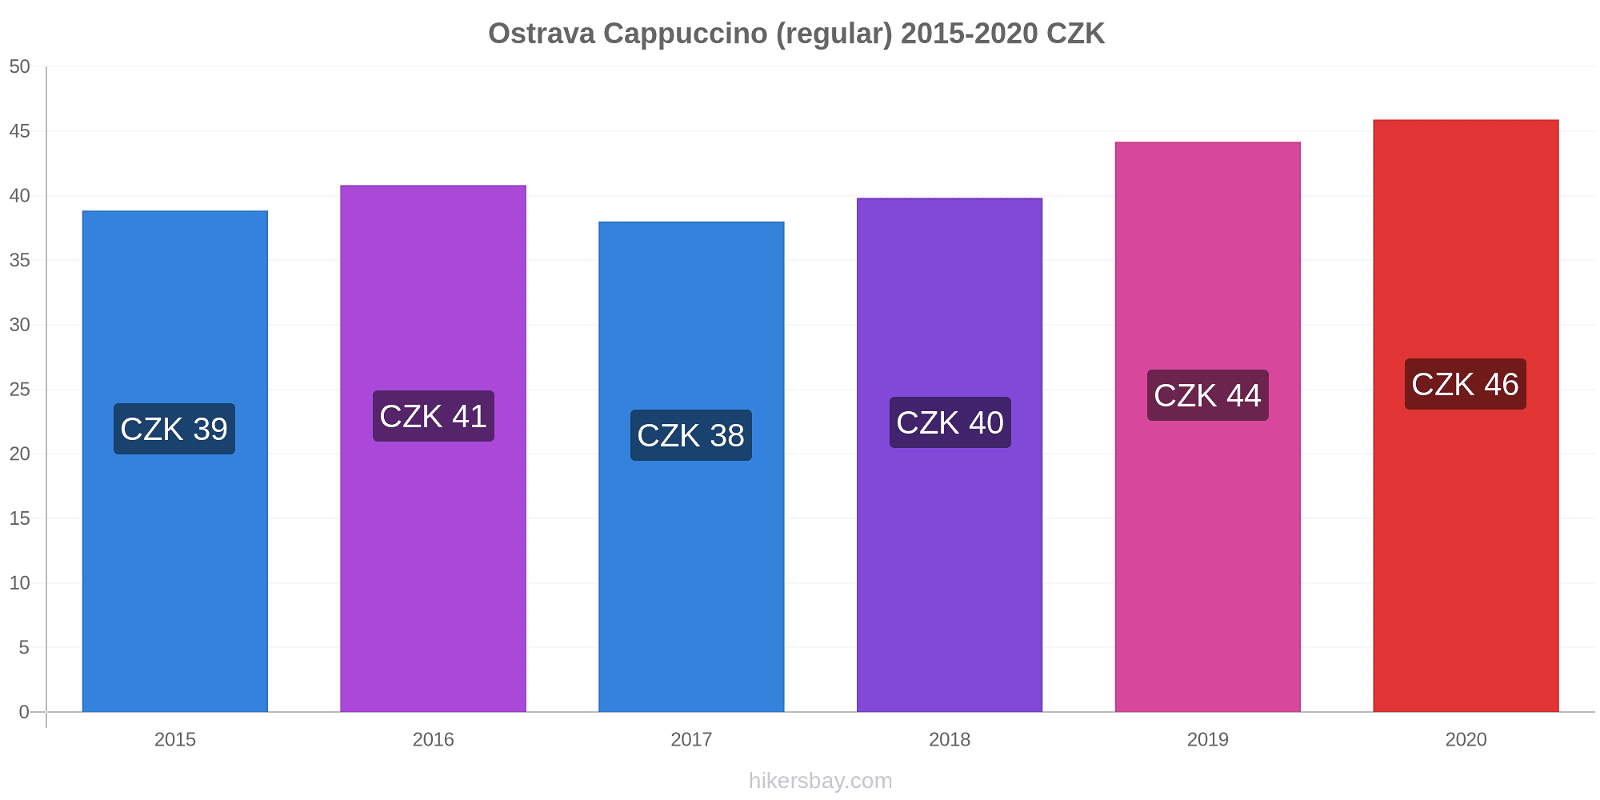 Ostrava price changes Cappuccino (regular) hikersbay.com